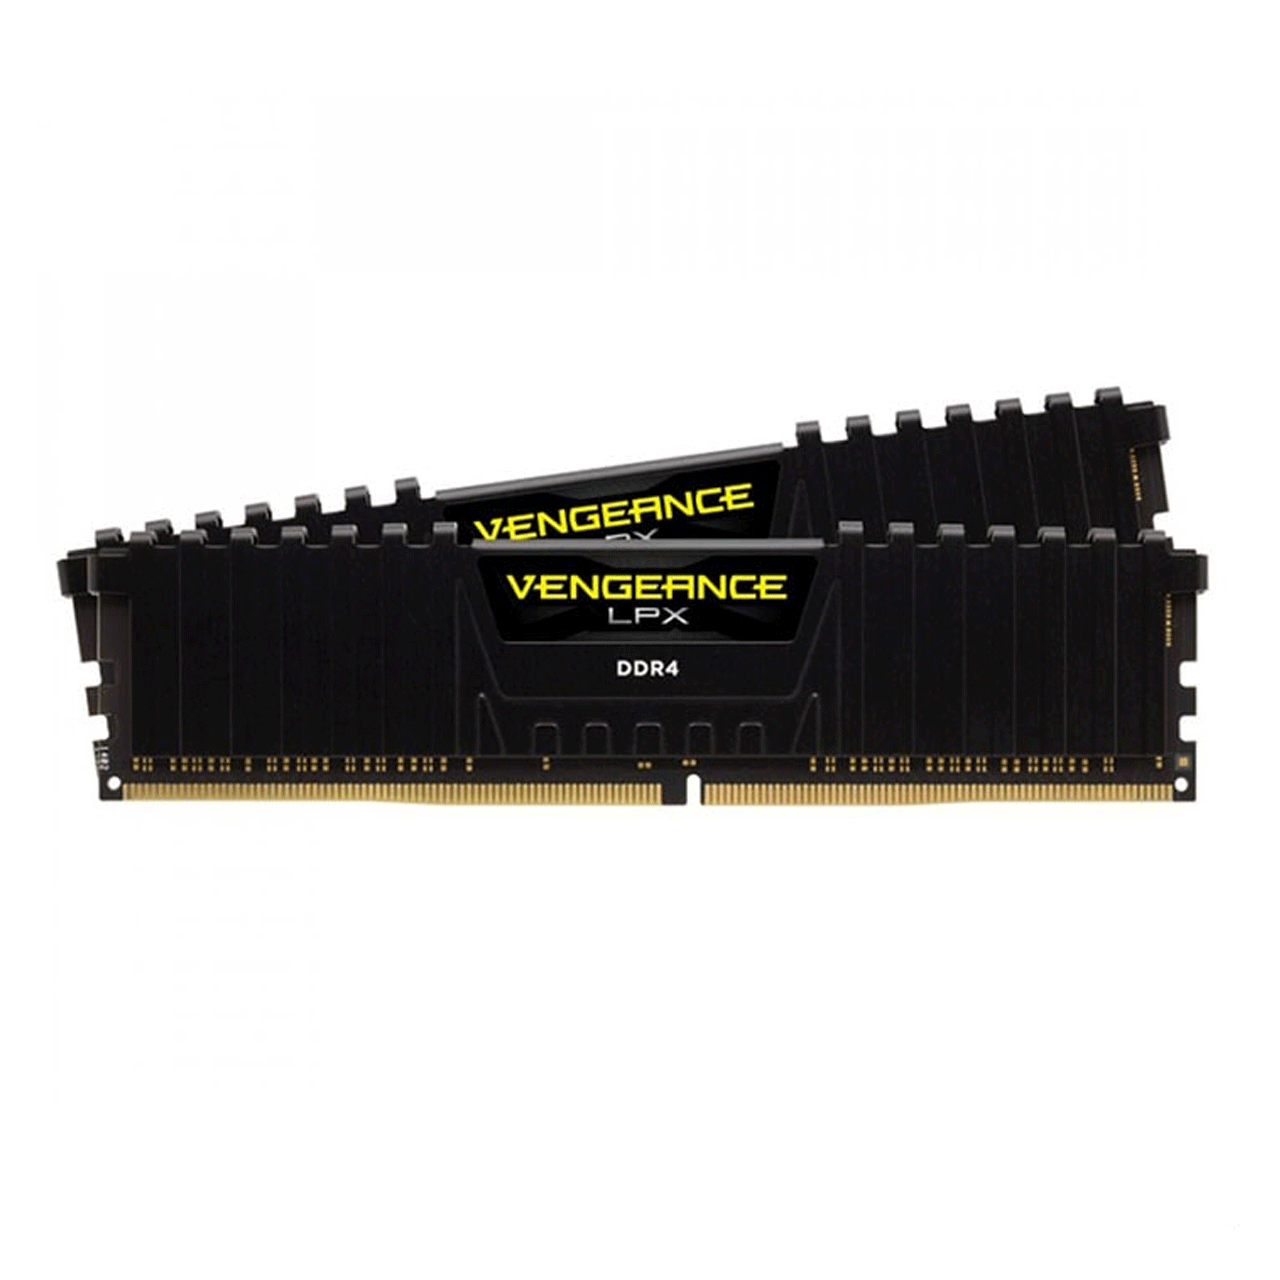 Corsair-Vengeance-LPX-DDR4-8G3000MHz-C16-Single-Channel-Ram